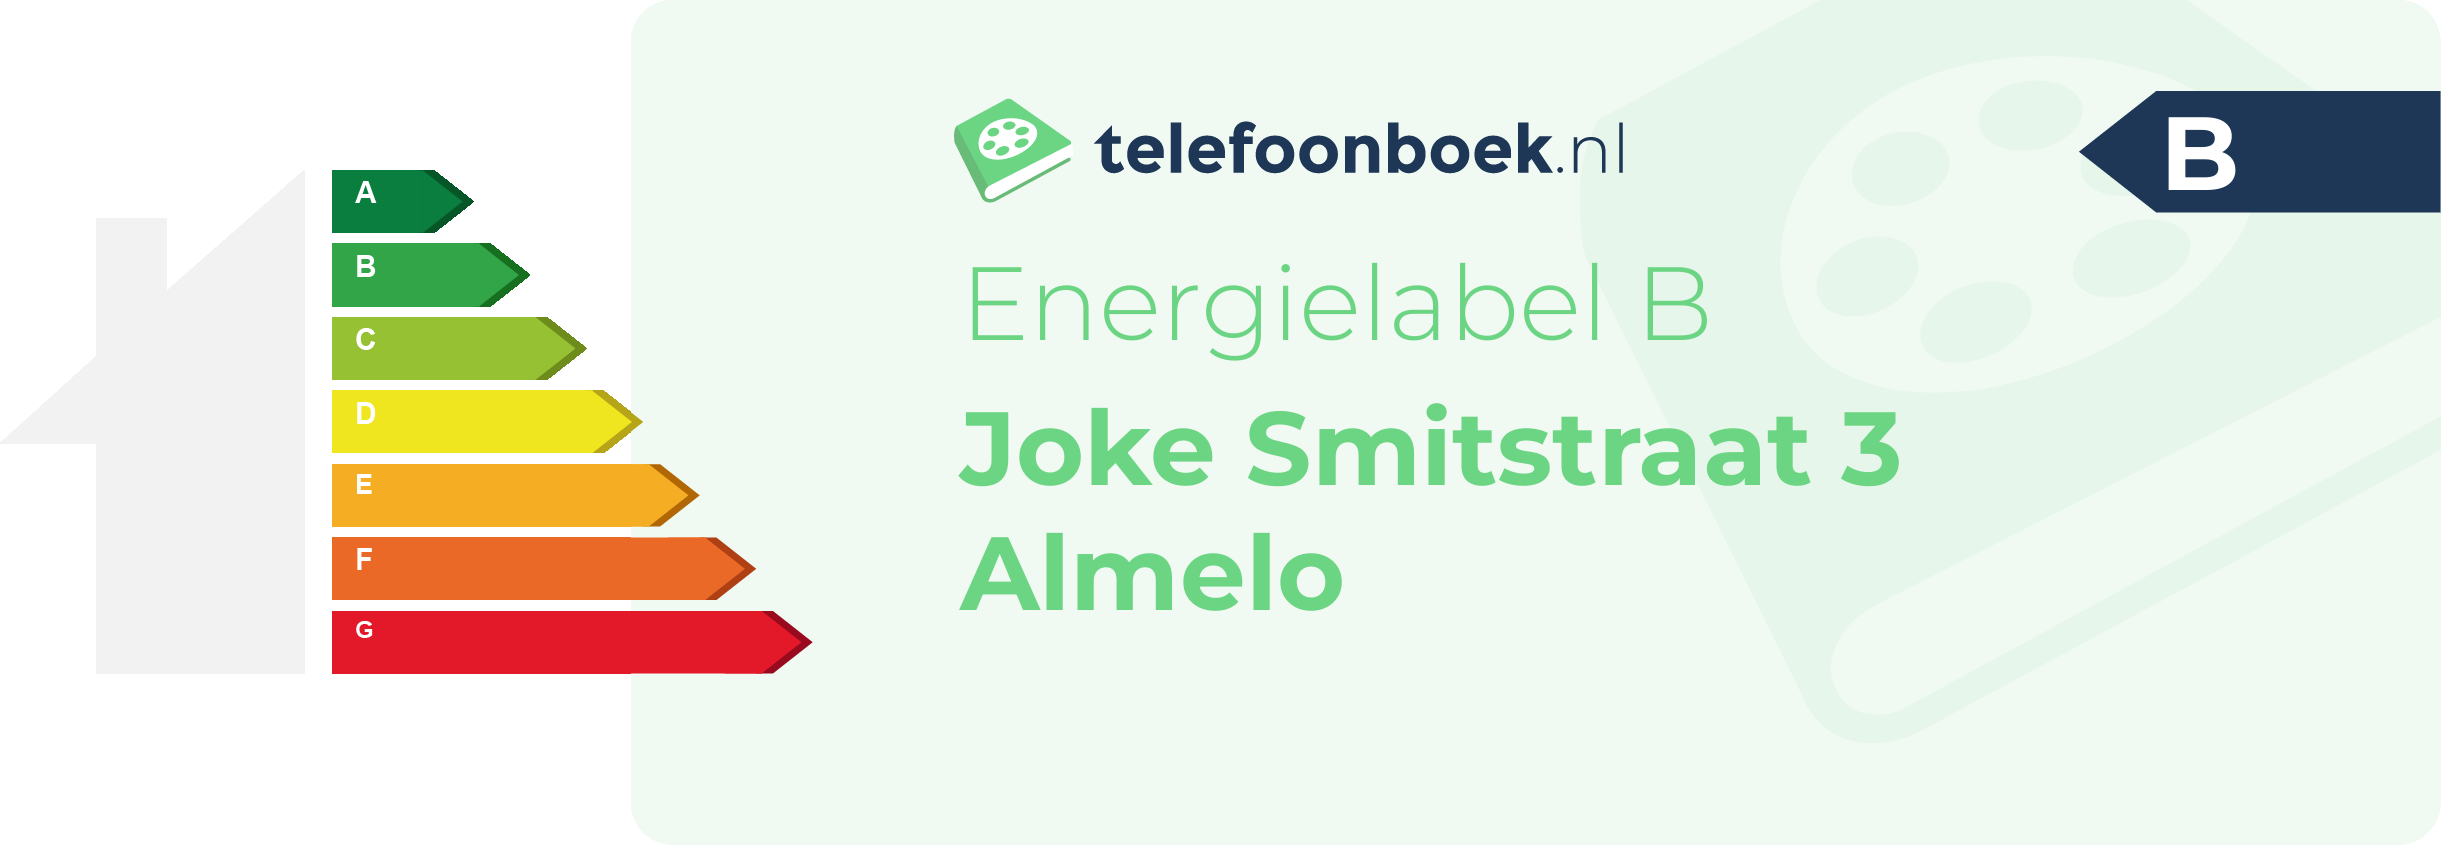 Energielabel Joke Smitstraat 3 Almelo